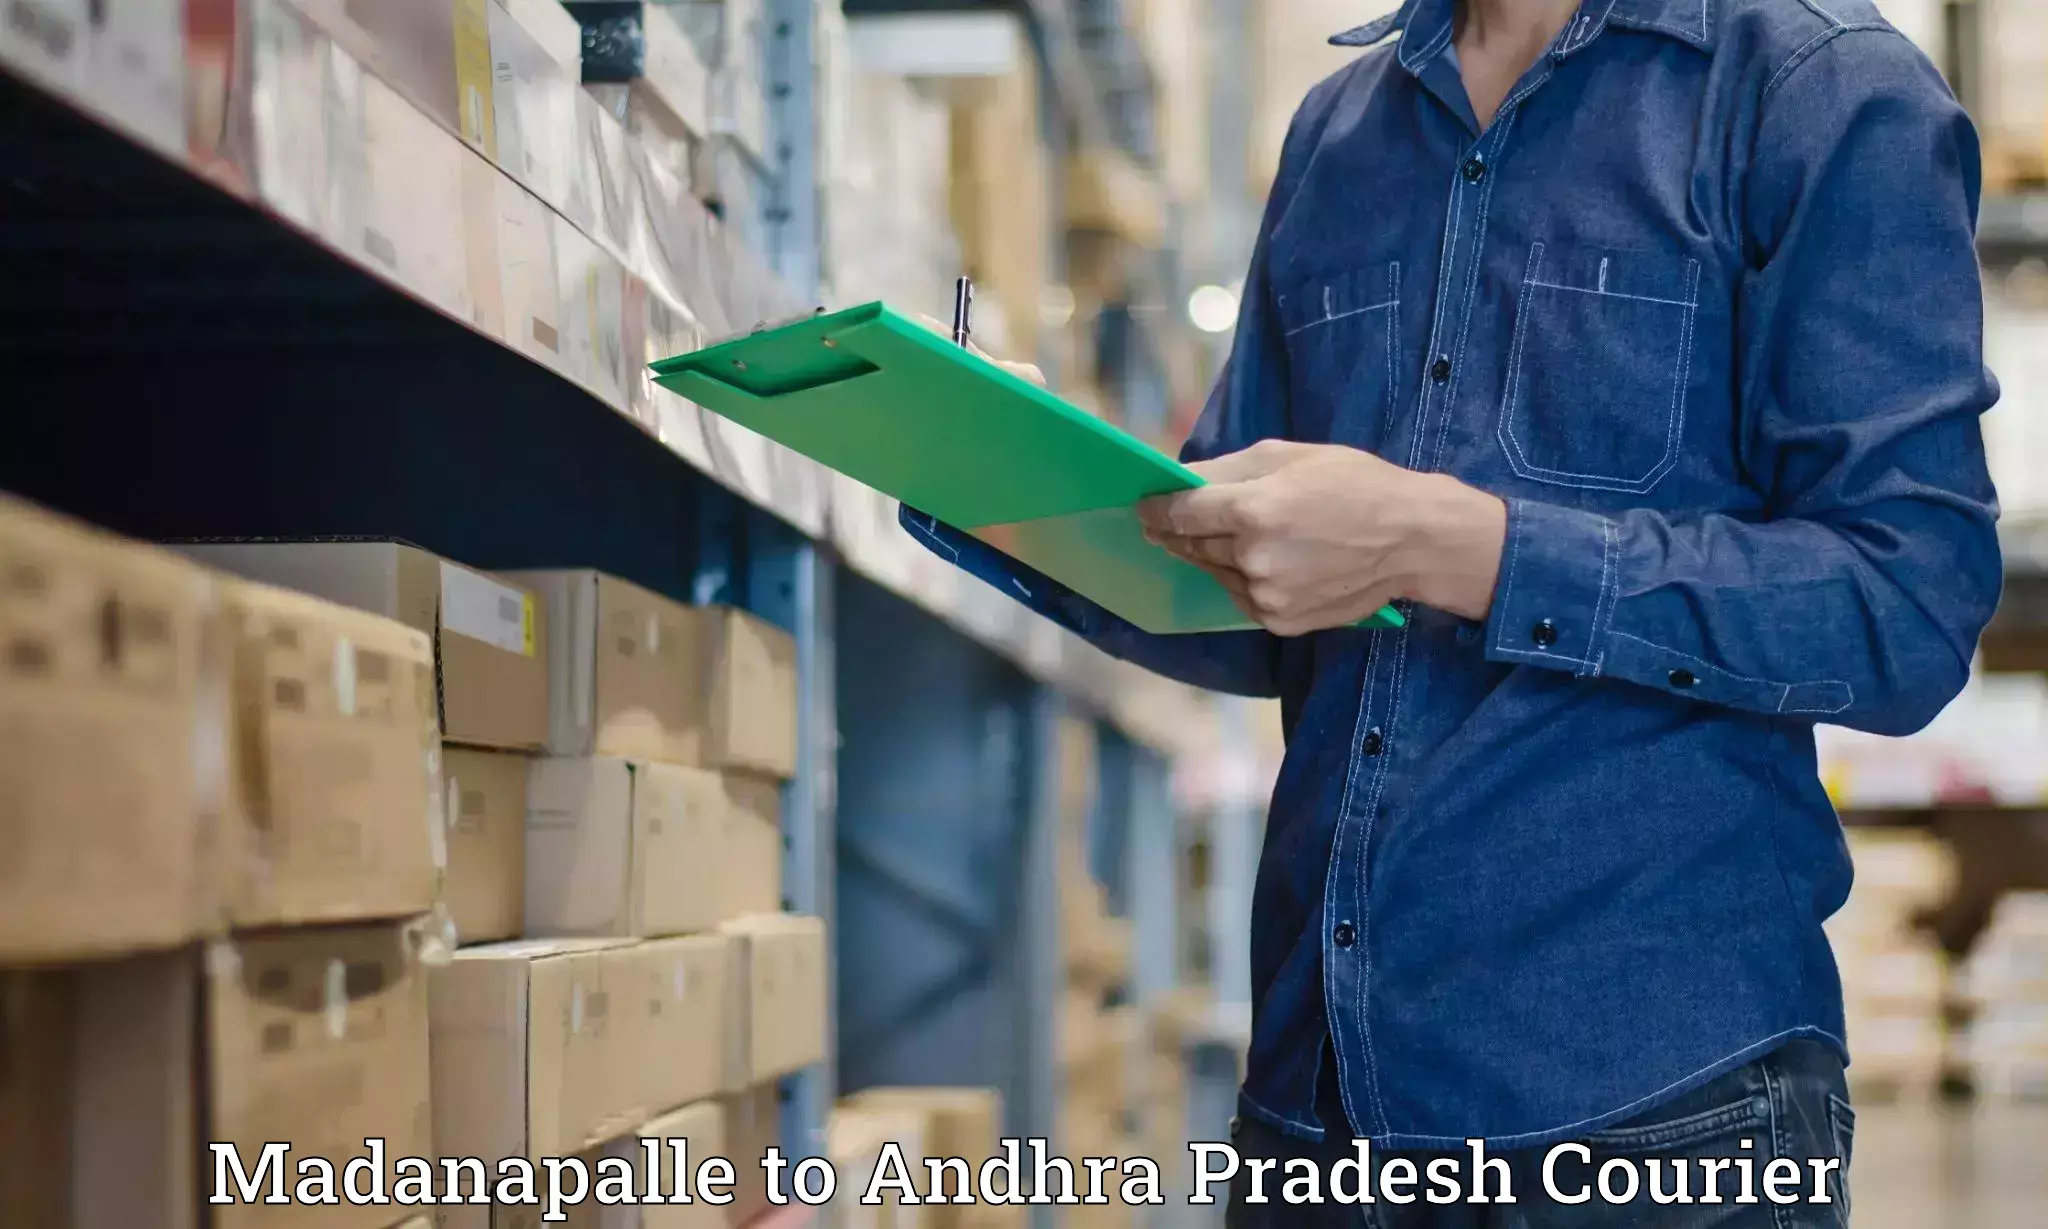 Courier service efficiency Madanapalle to Veldurthi